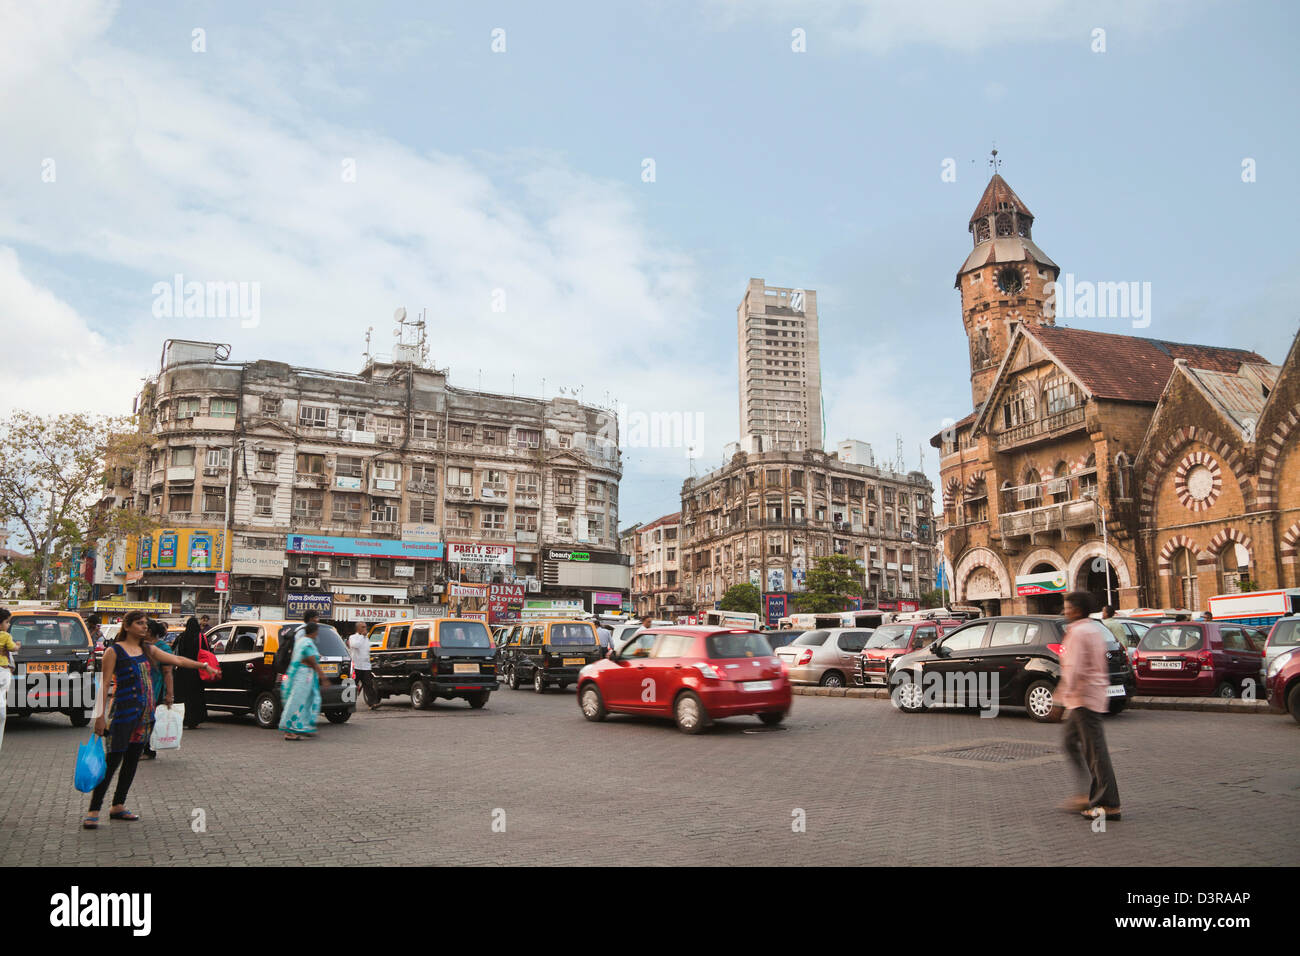 Traffic on the road in a city, Crawford Market, Mumbai, Maharashtra, India Stock Photo